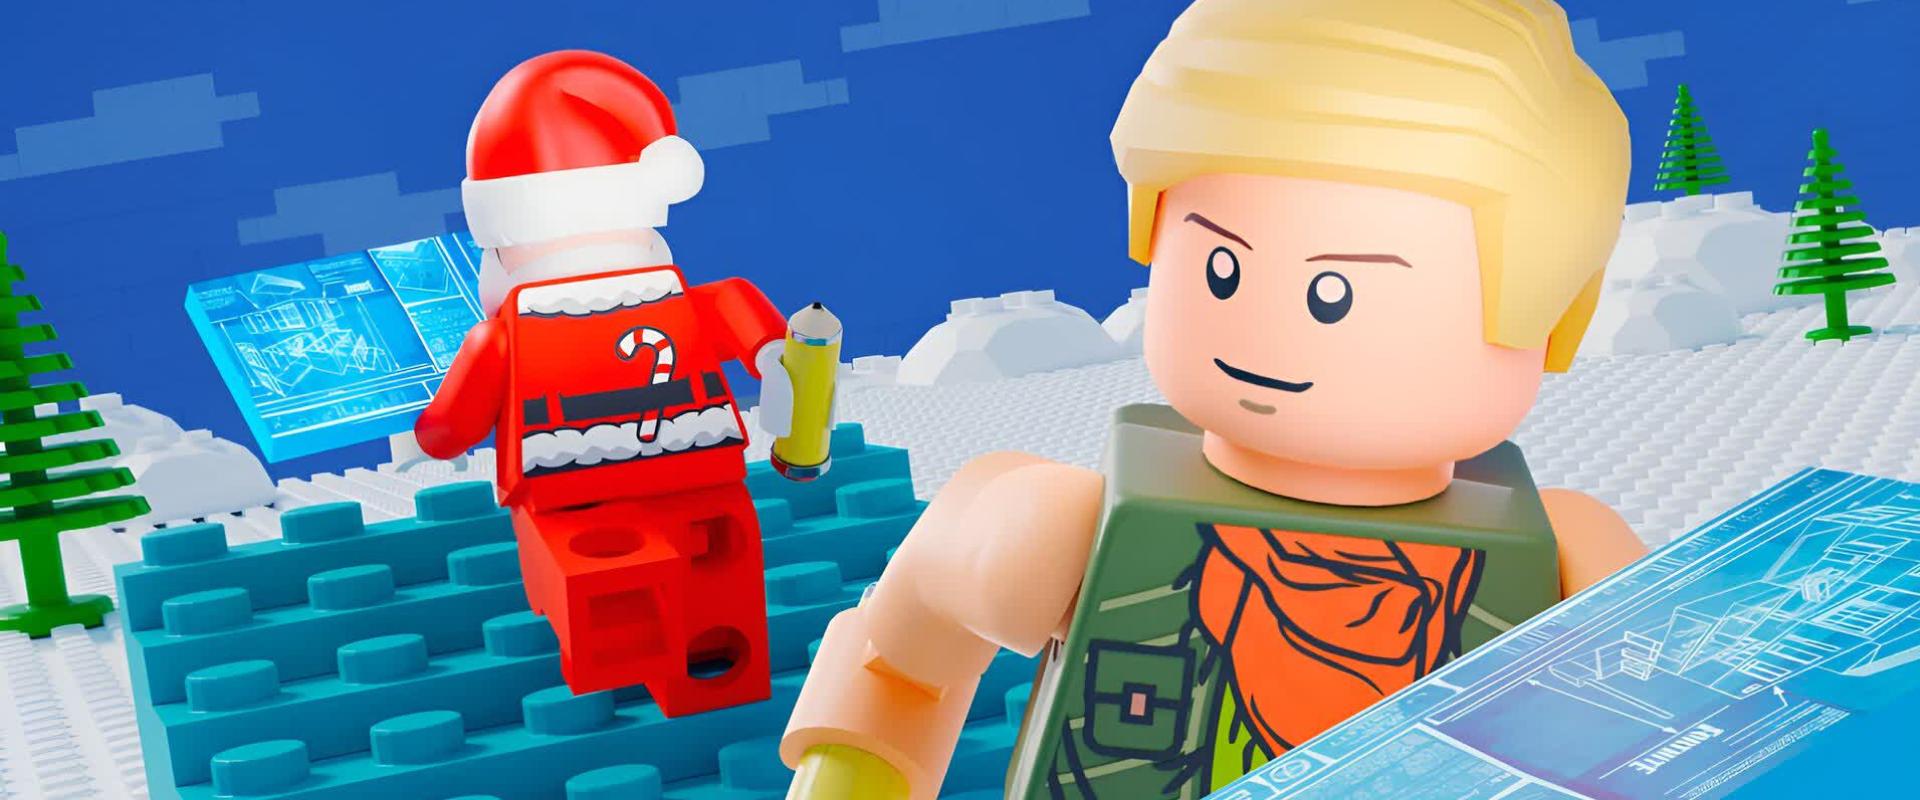 Itt vannak az első LEGO Fortnite Creative pályák